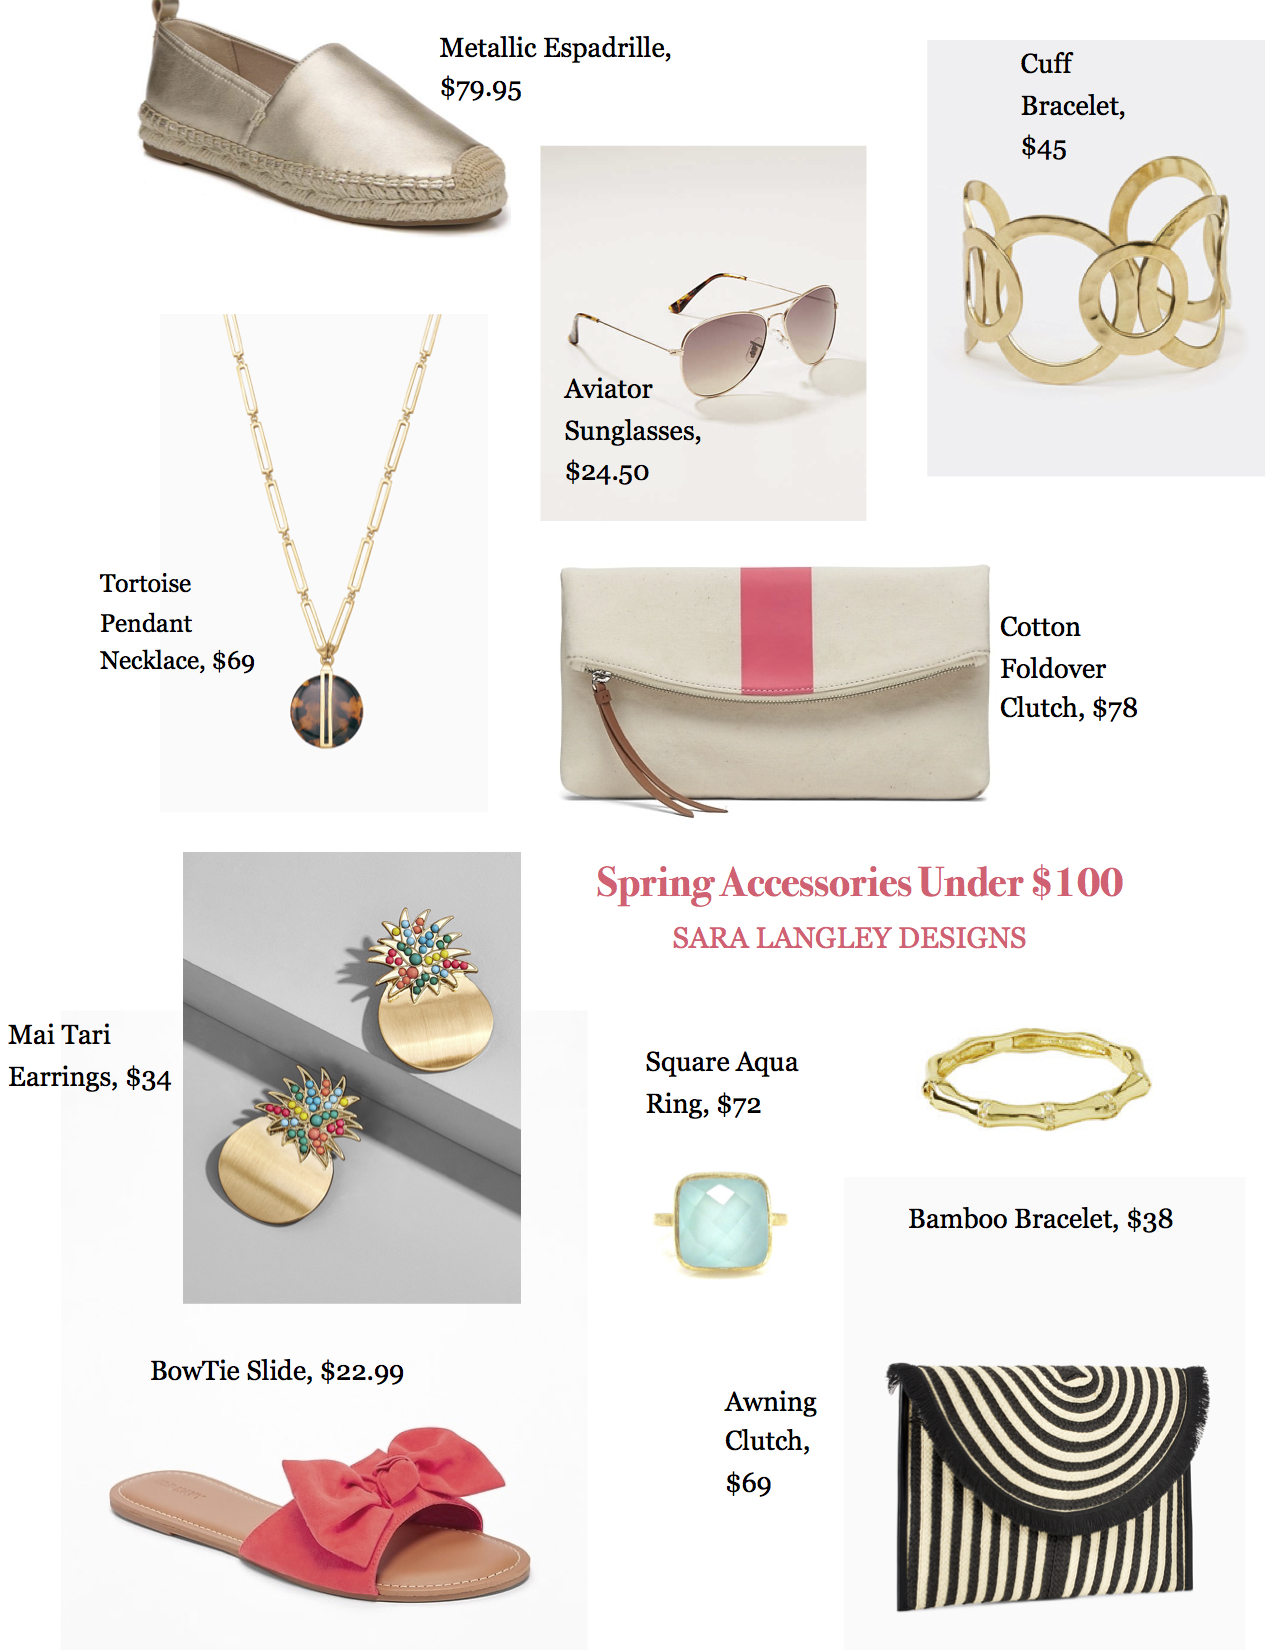 Spring accessories under $100